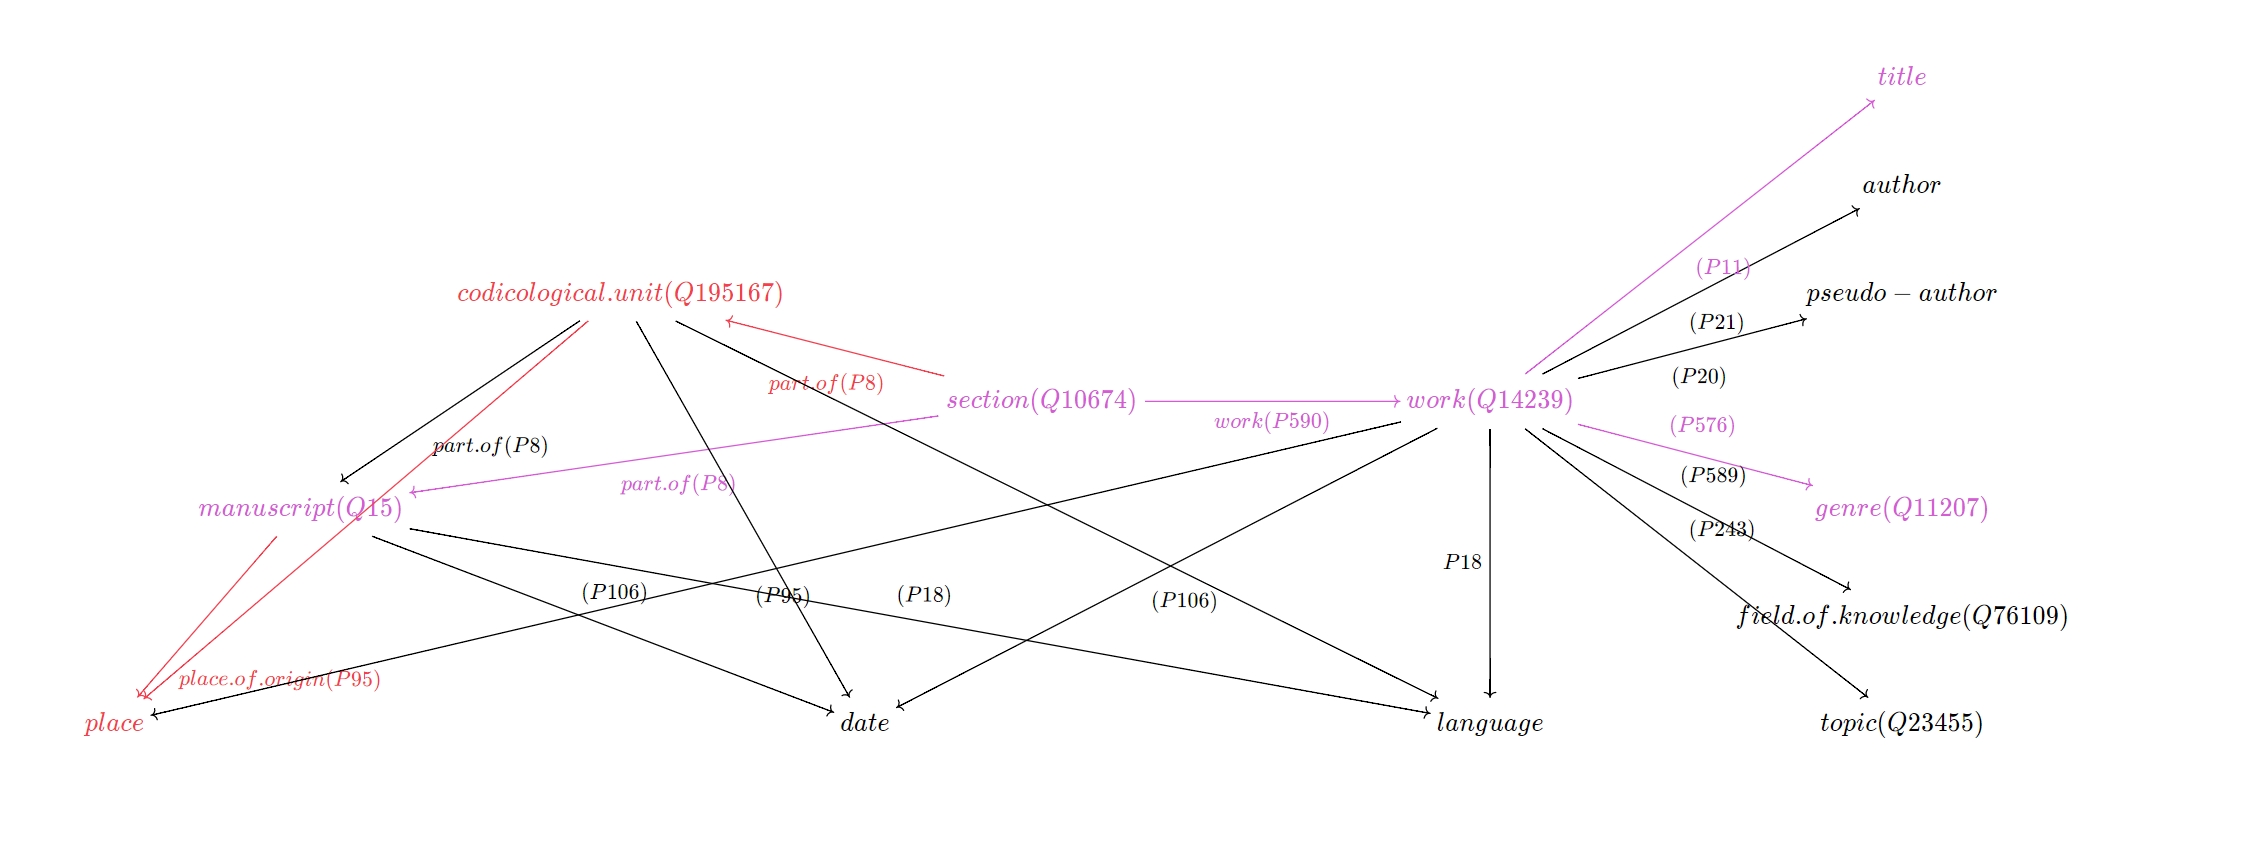 File:Data model for codices (work, genre etc.).jpg